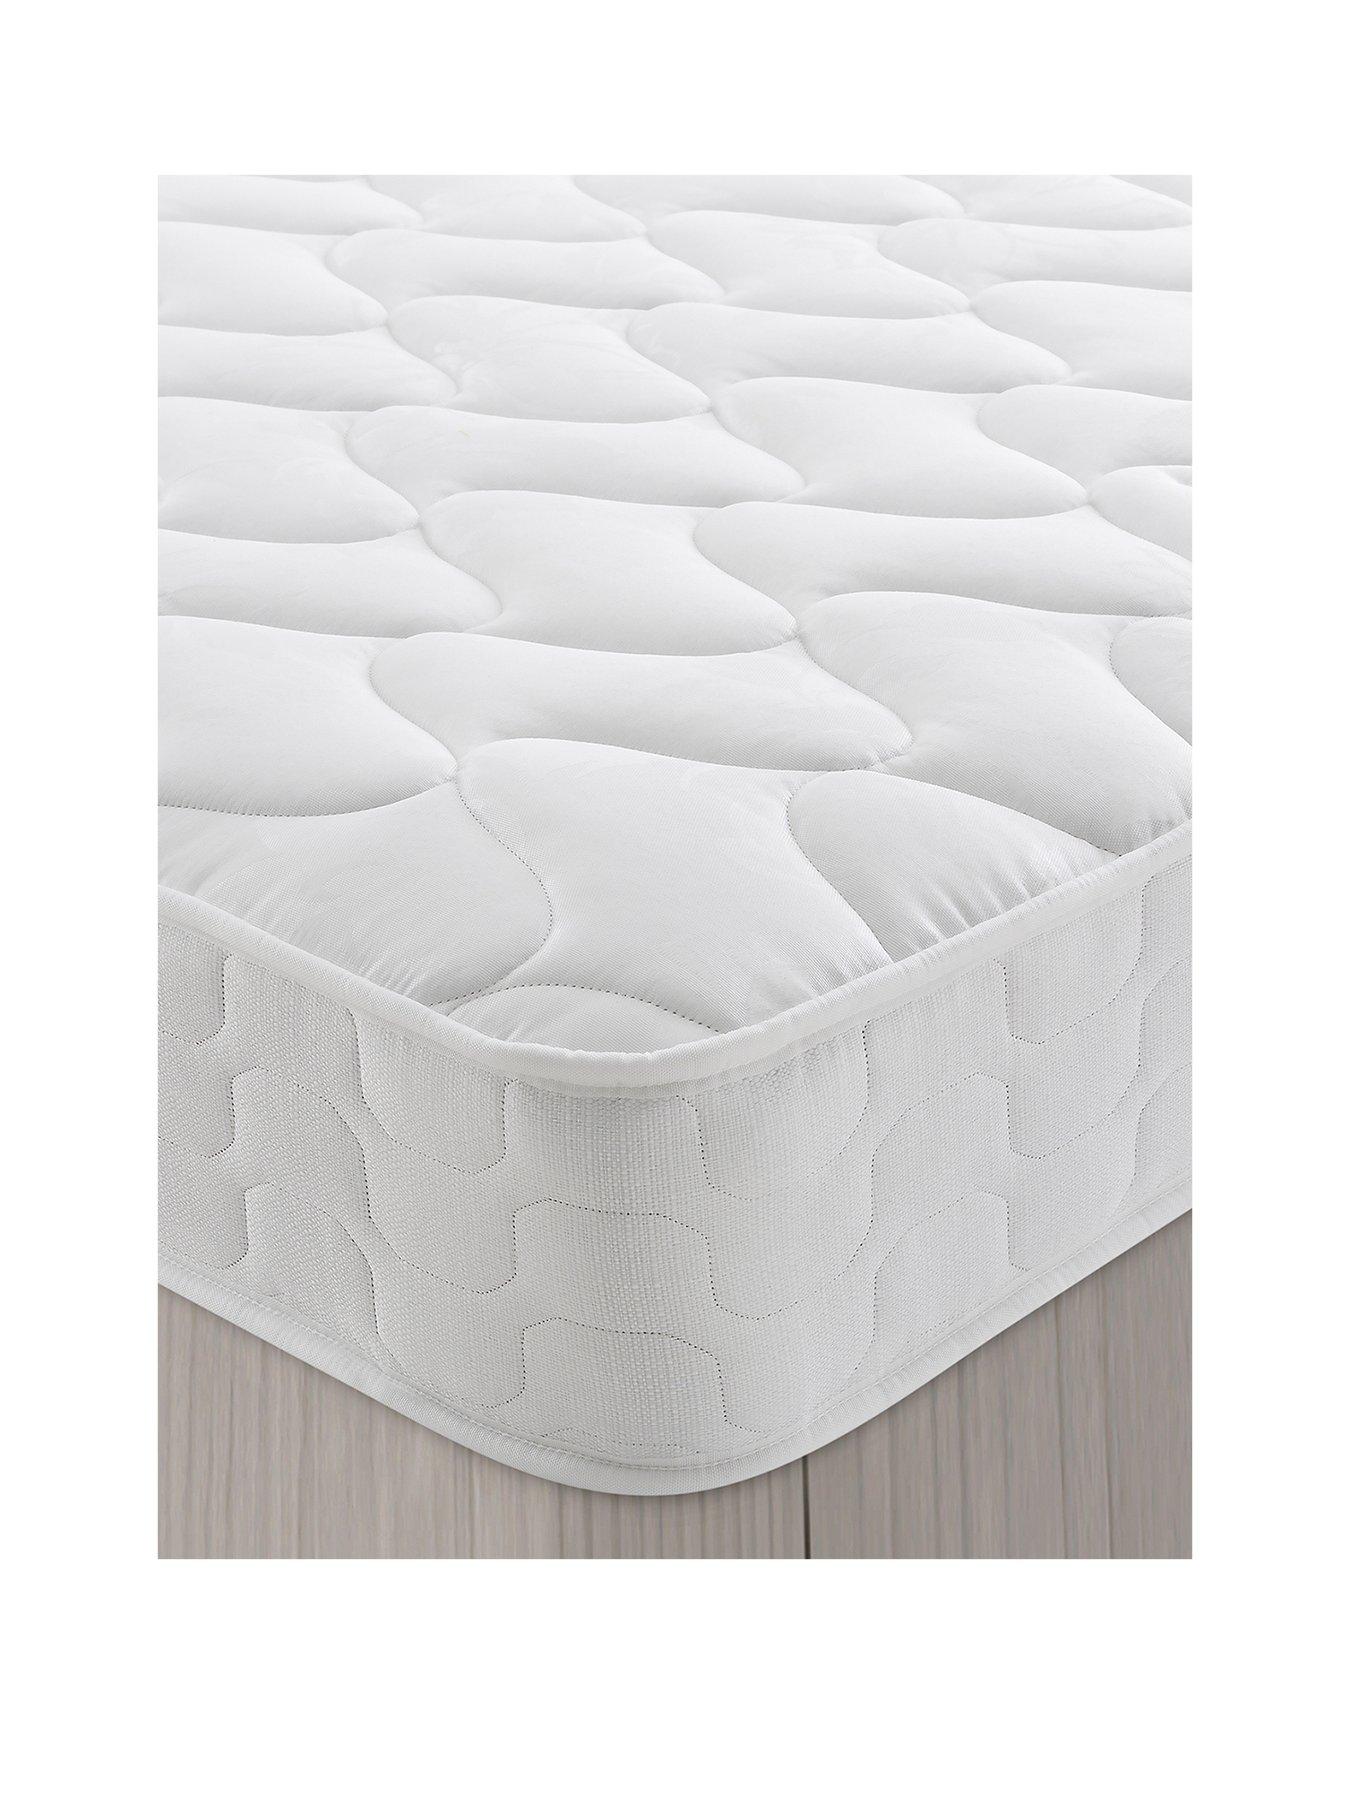 firm cot mattress